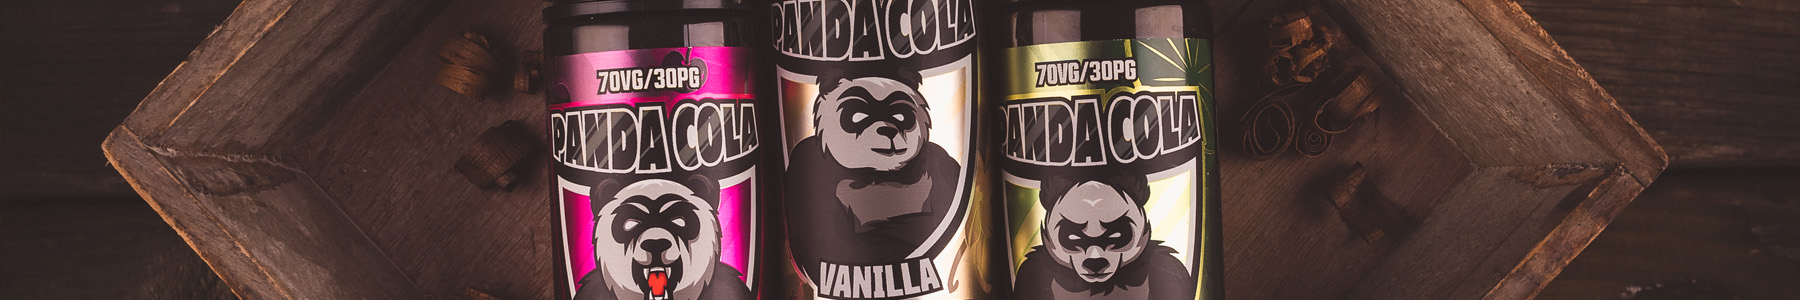 Panda Cola